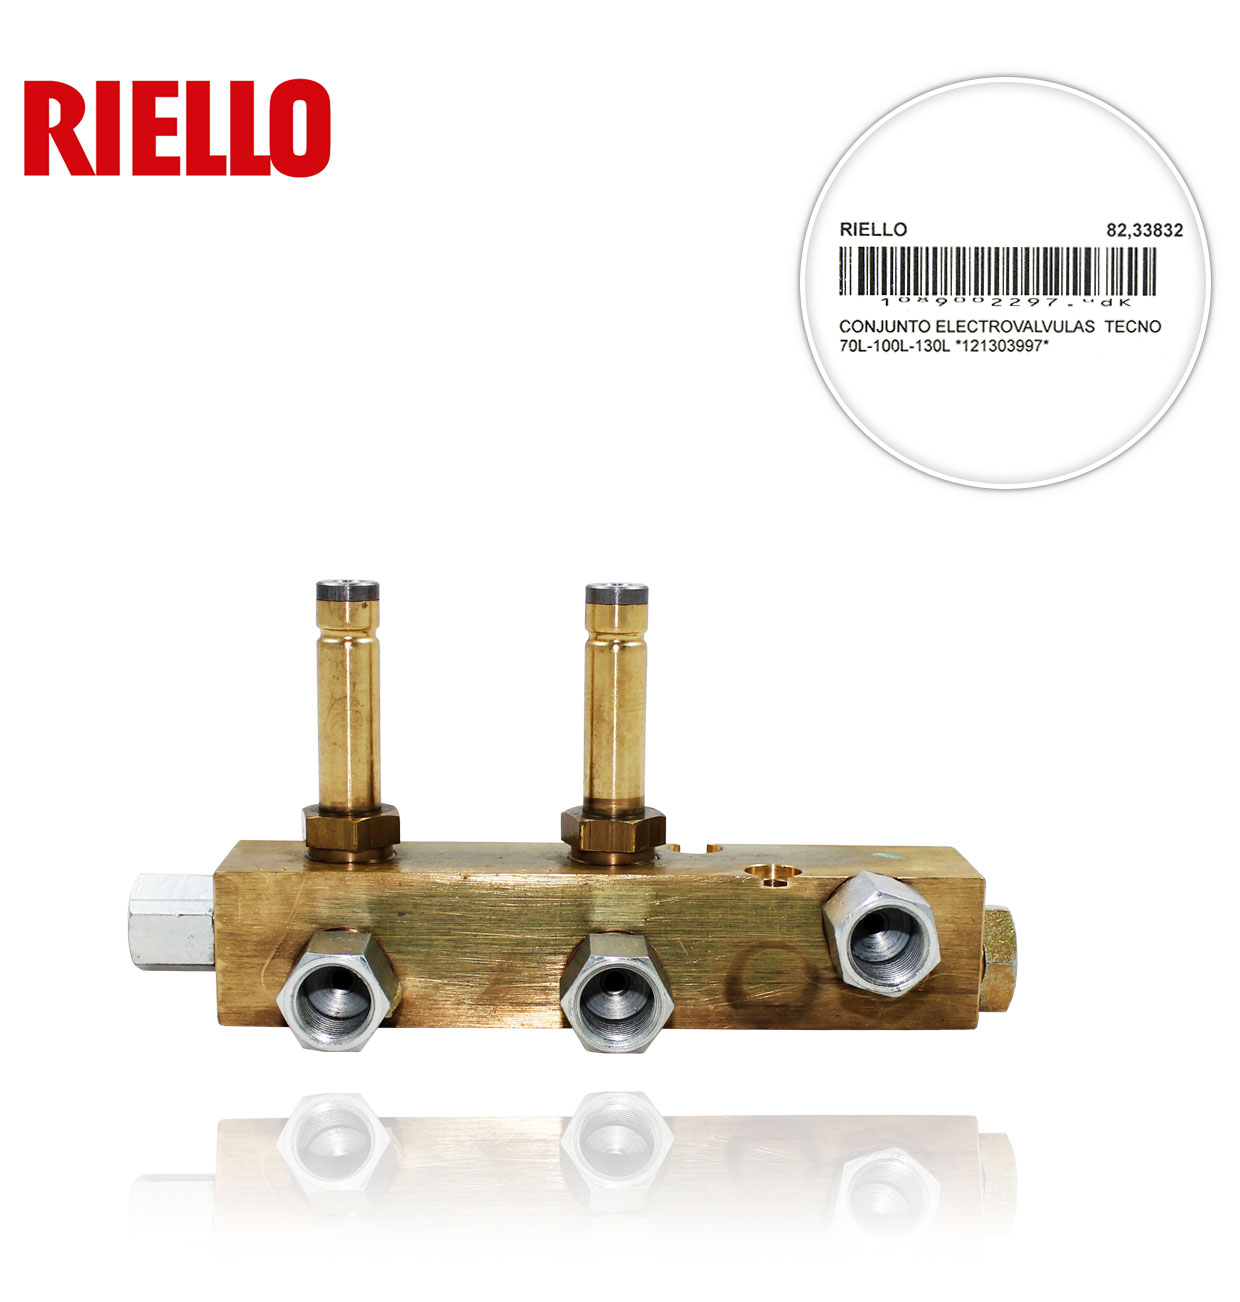 RIELLO 3003997 70L-100L-130L TECNO SOLENOID VALVE ASSEMBLY